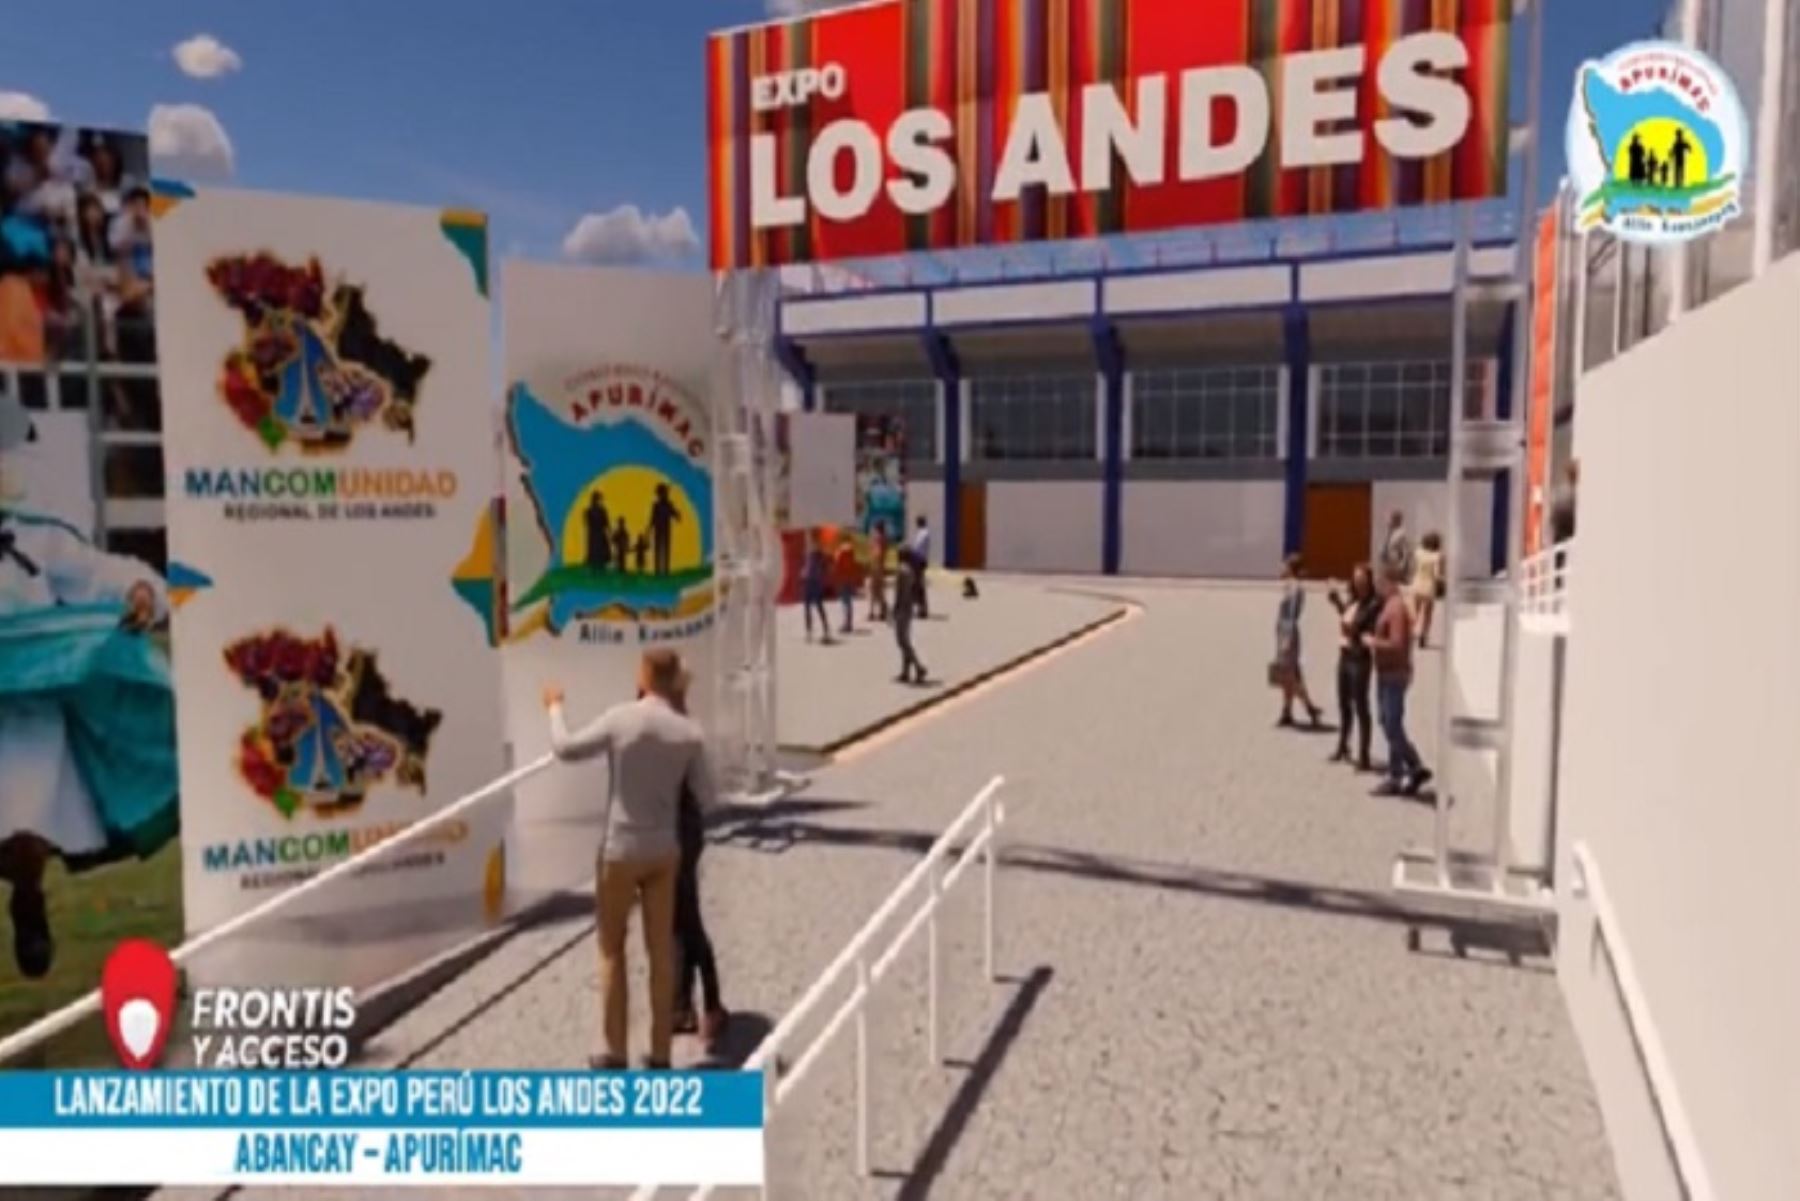 Expo Perú Los Andes 2022 se lanzará hoy, a las 11:30 horas, en el auditorio de Promperú (Av. Jorge Basadre 610, San Isidro).